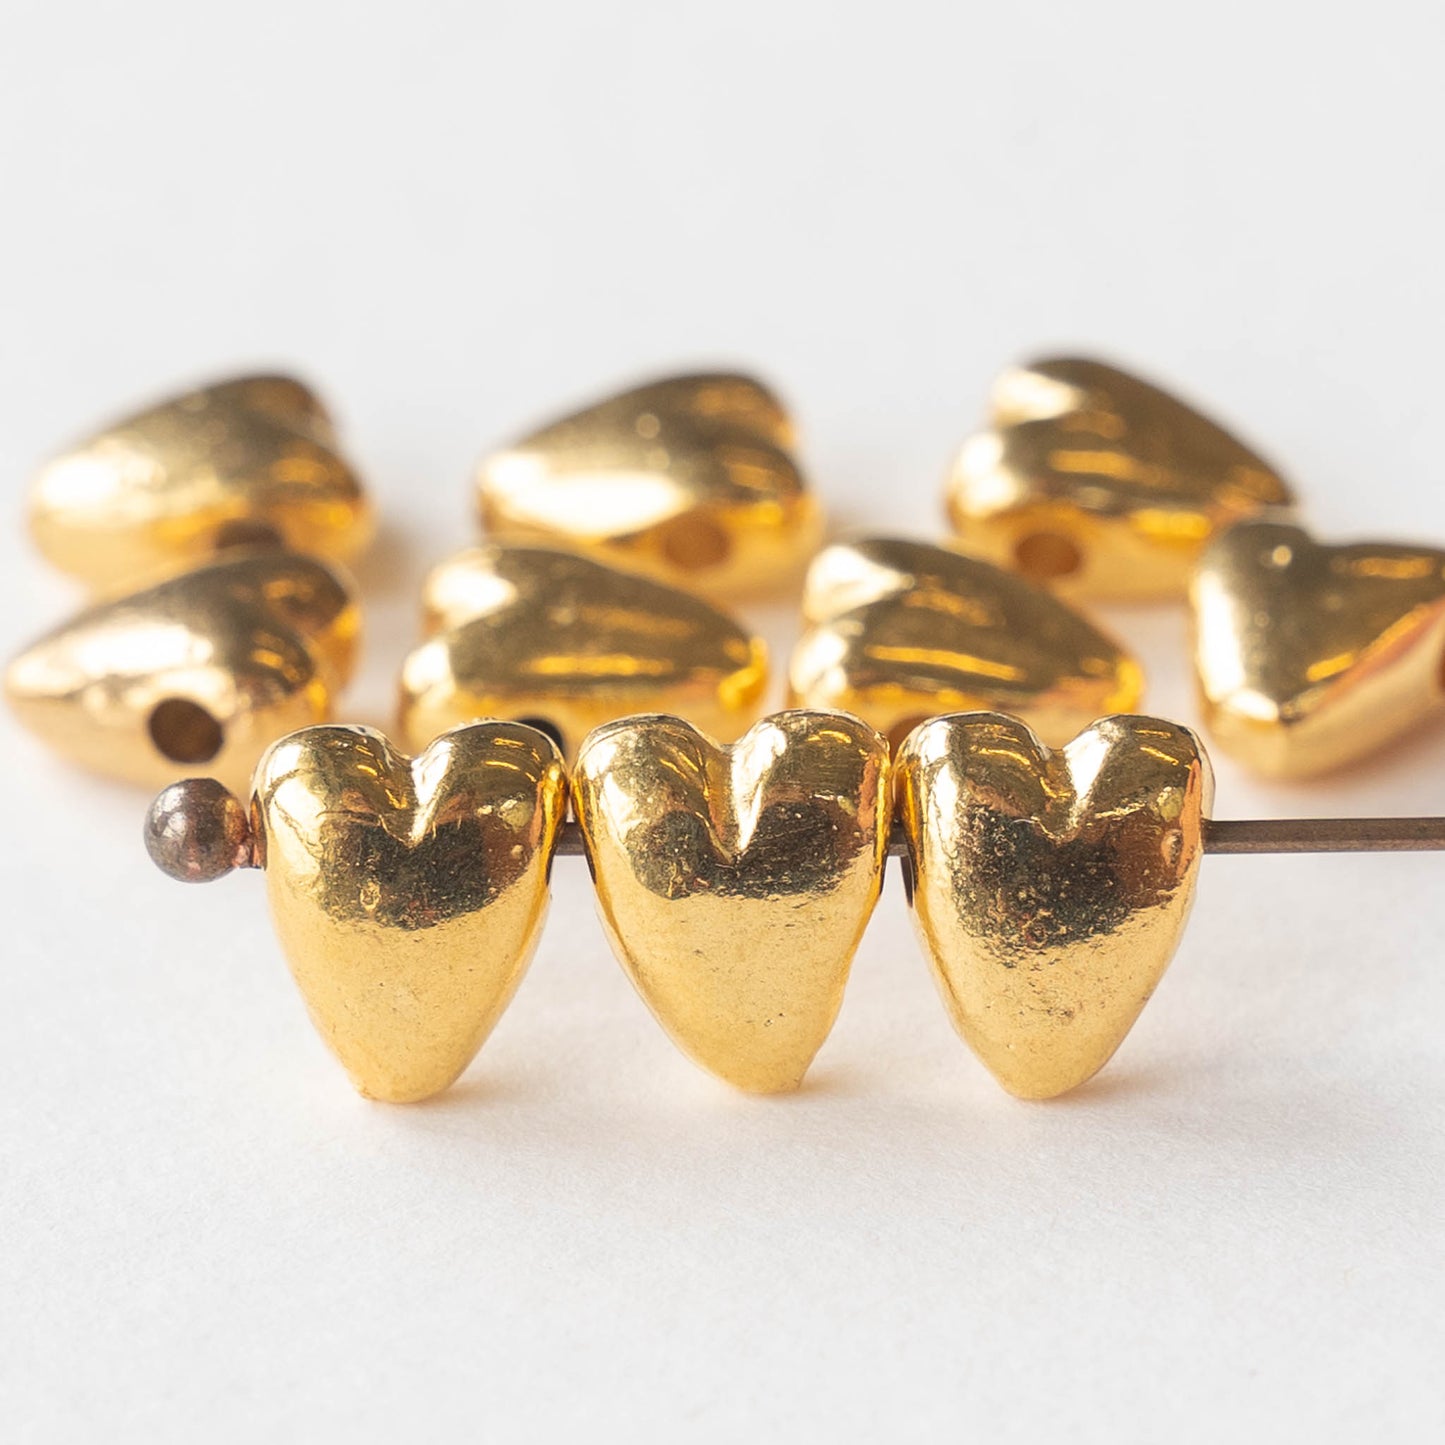 8x10mm Mykonos Metal Heart Beads - Gold - 10 beads